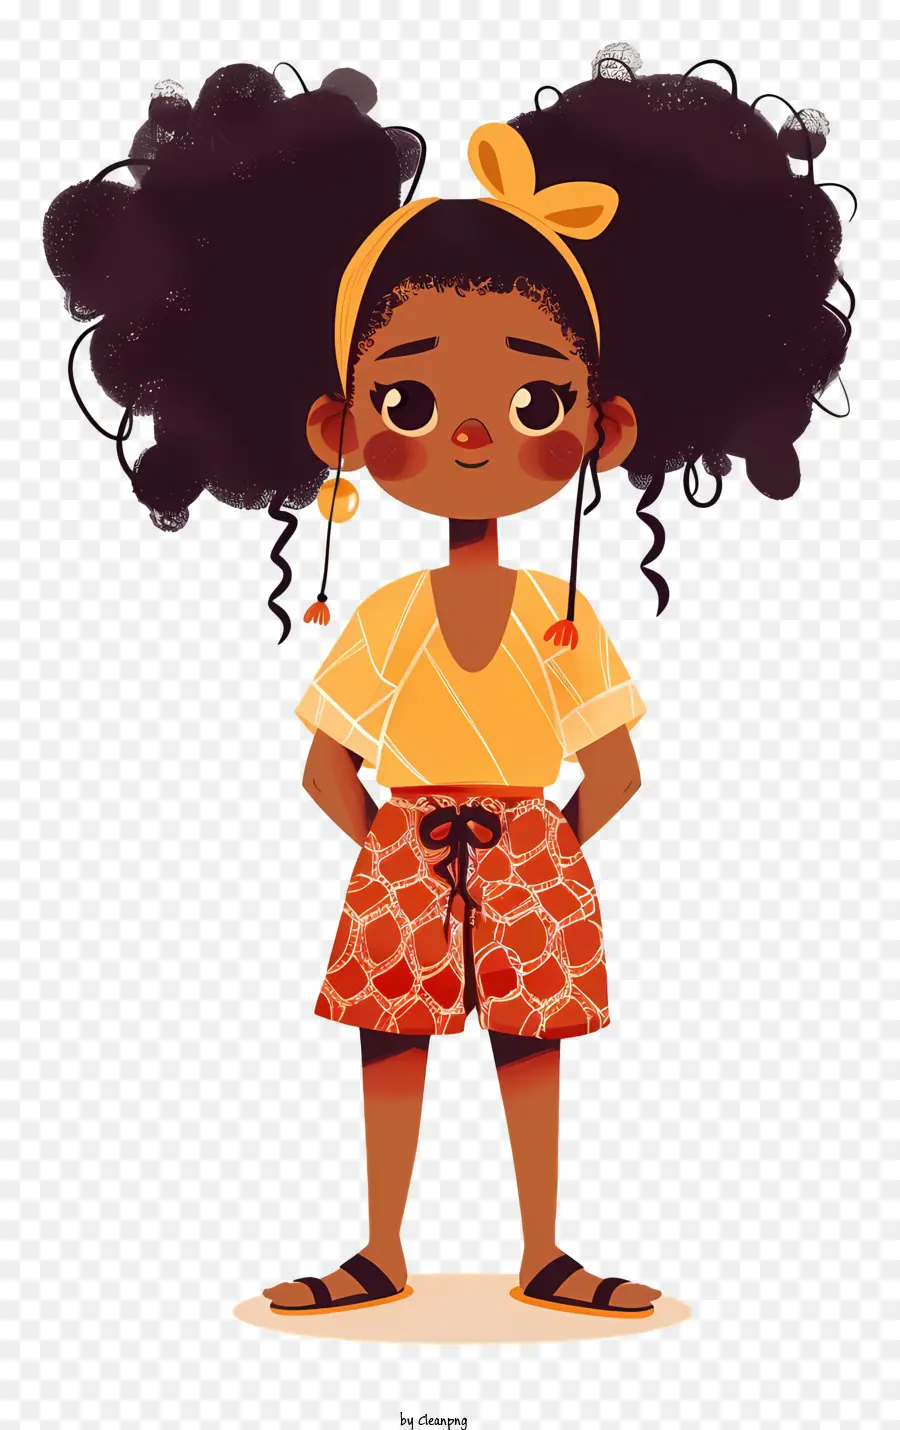 Afrikanisches Mädchen junges Mädchen Afro Frisur Rock weißes Hemd - Junges Mädchen mit Afro -Haaren in Blumenoutfit